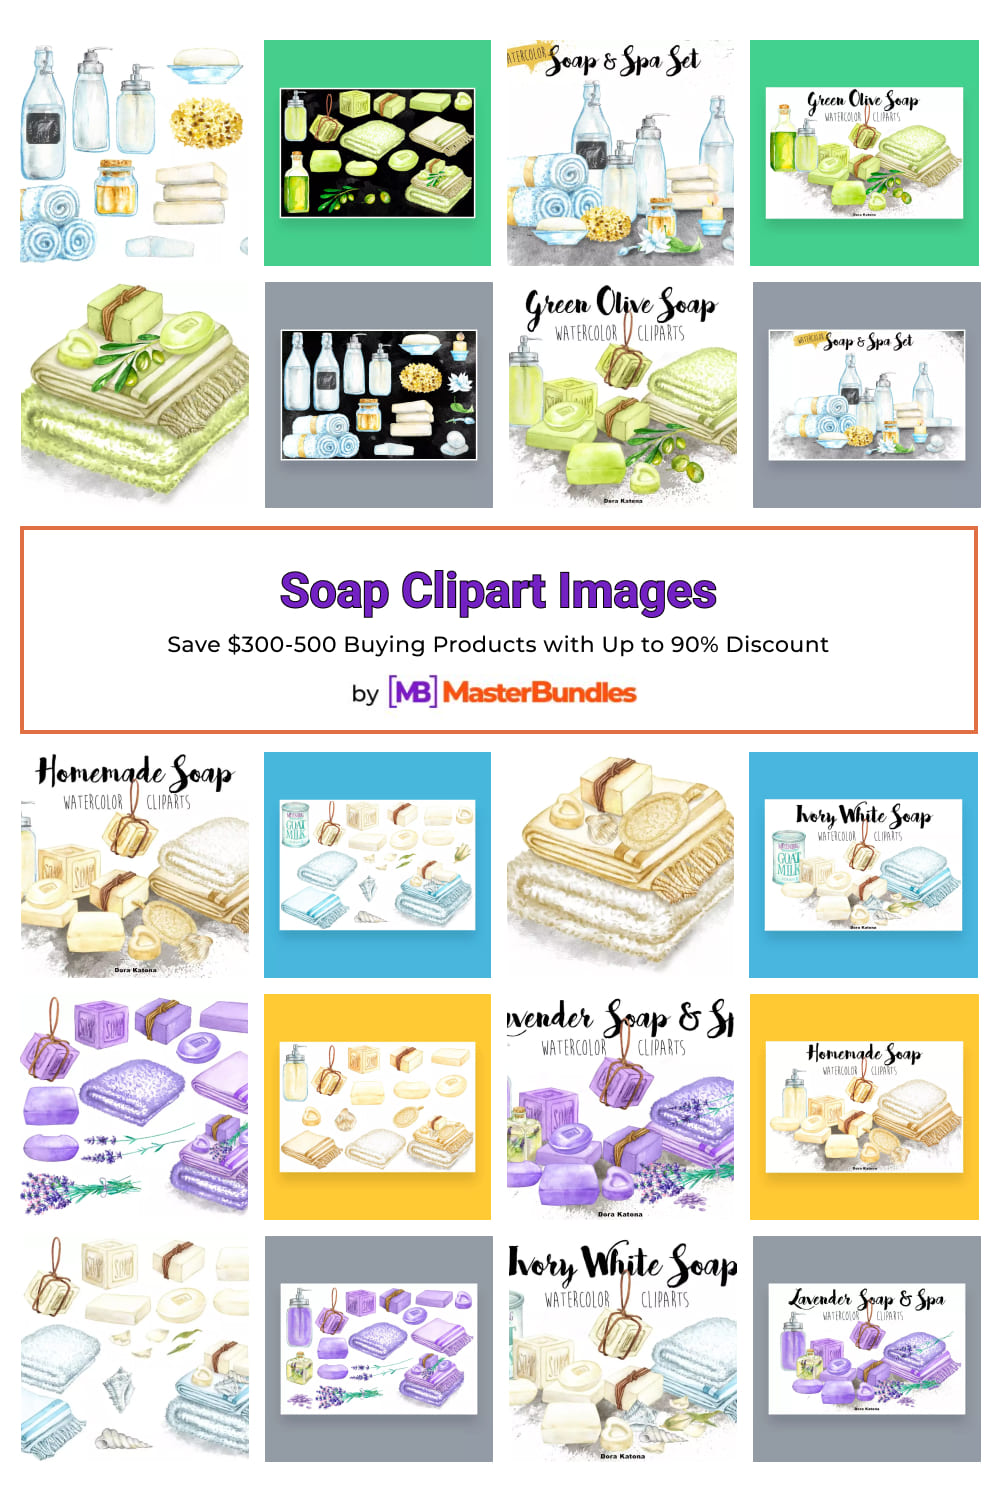 Soap Clipart Images Pinterest image.